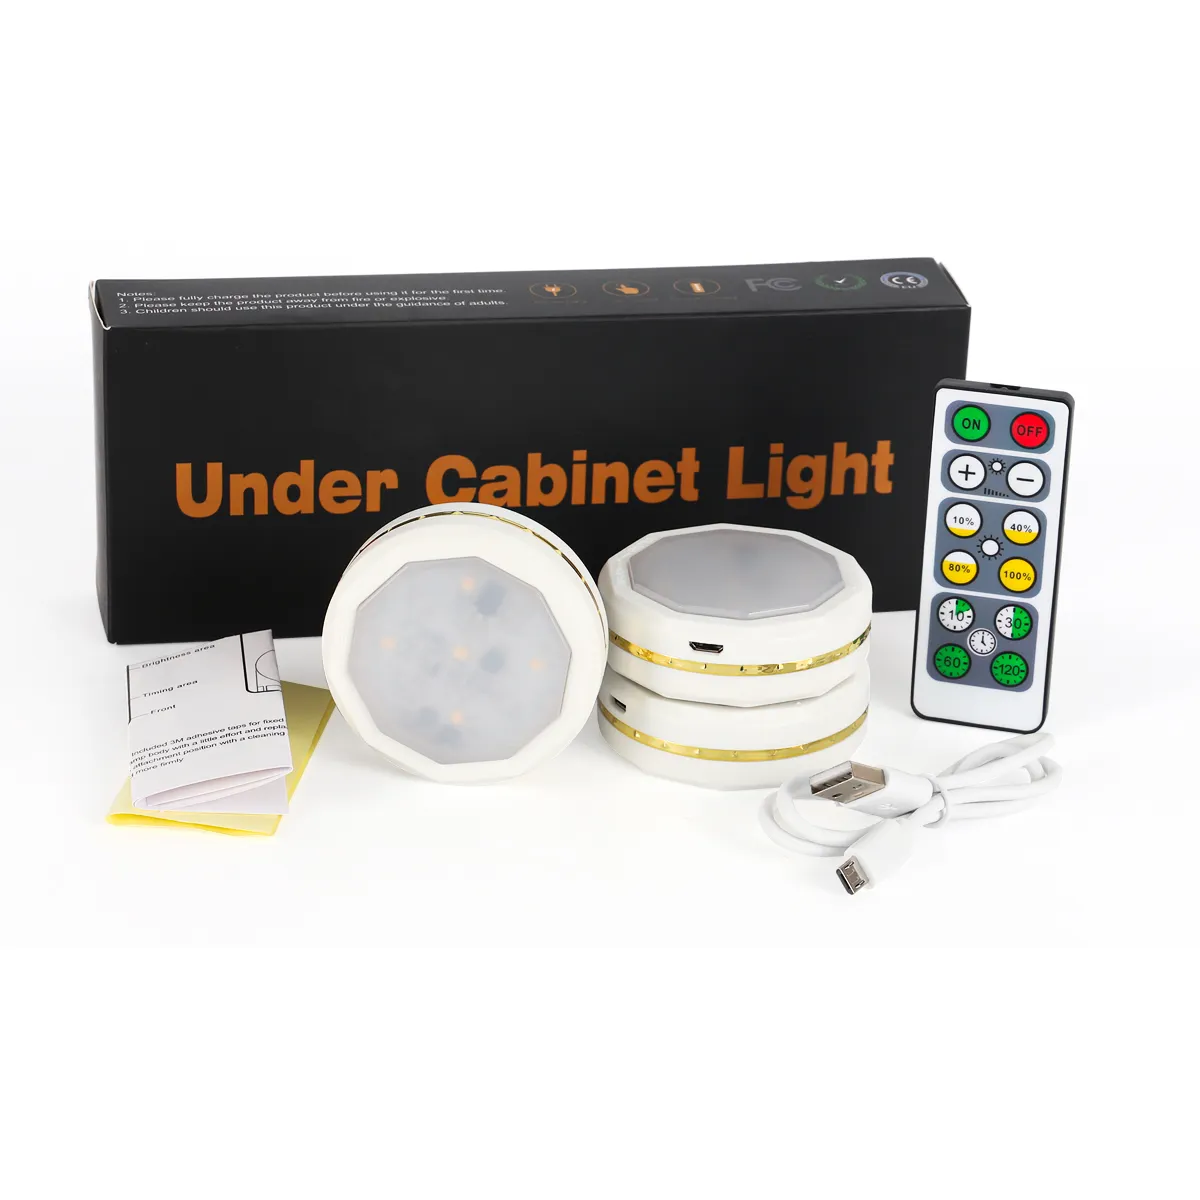 Mini Battery Powered Magnets Stick On Energy Saving Lighting Cordless PIR Motion Sensor LED Night Light Smart Cabinet Light